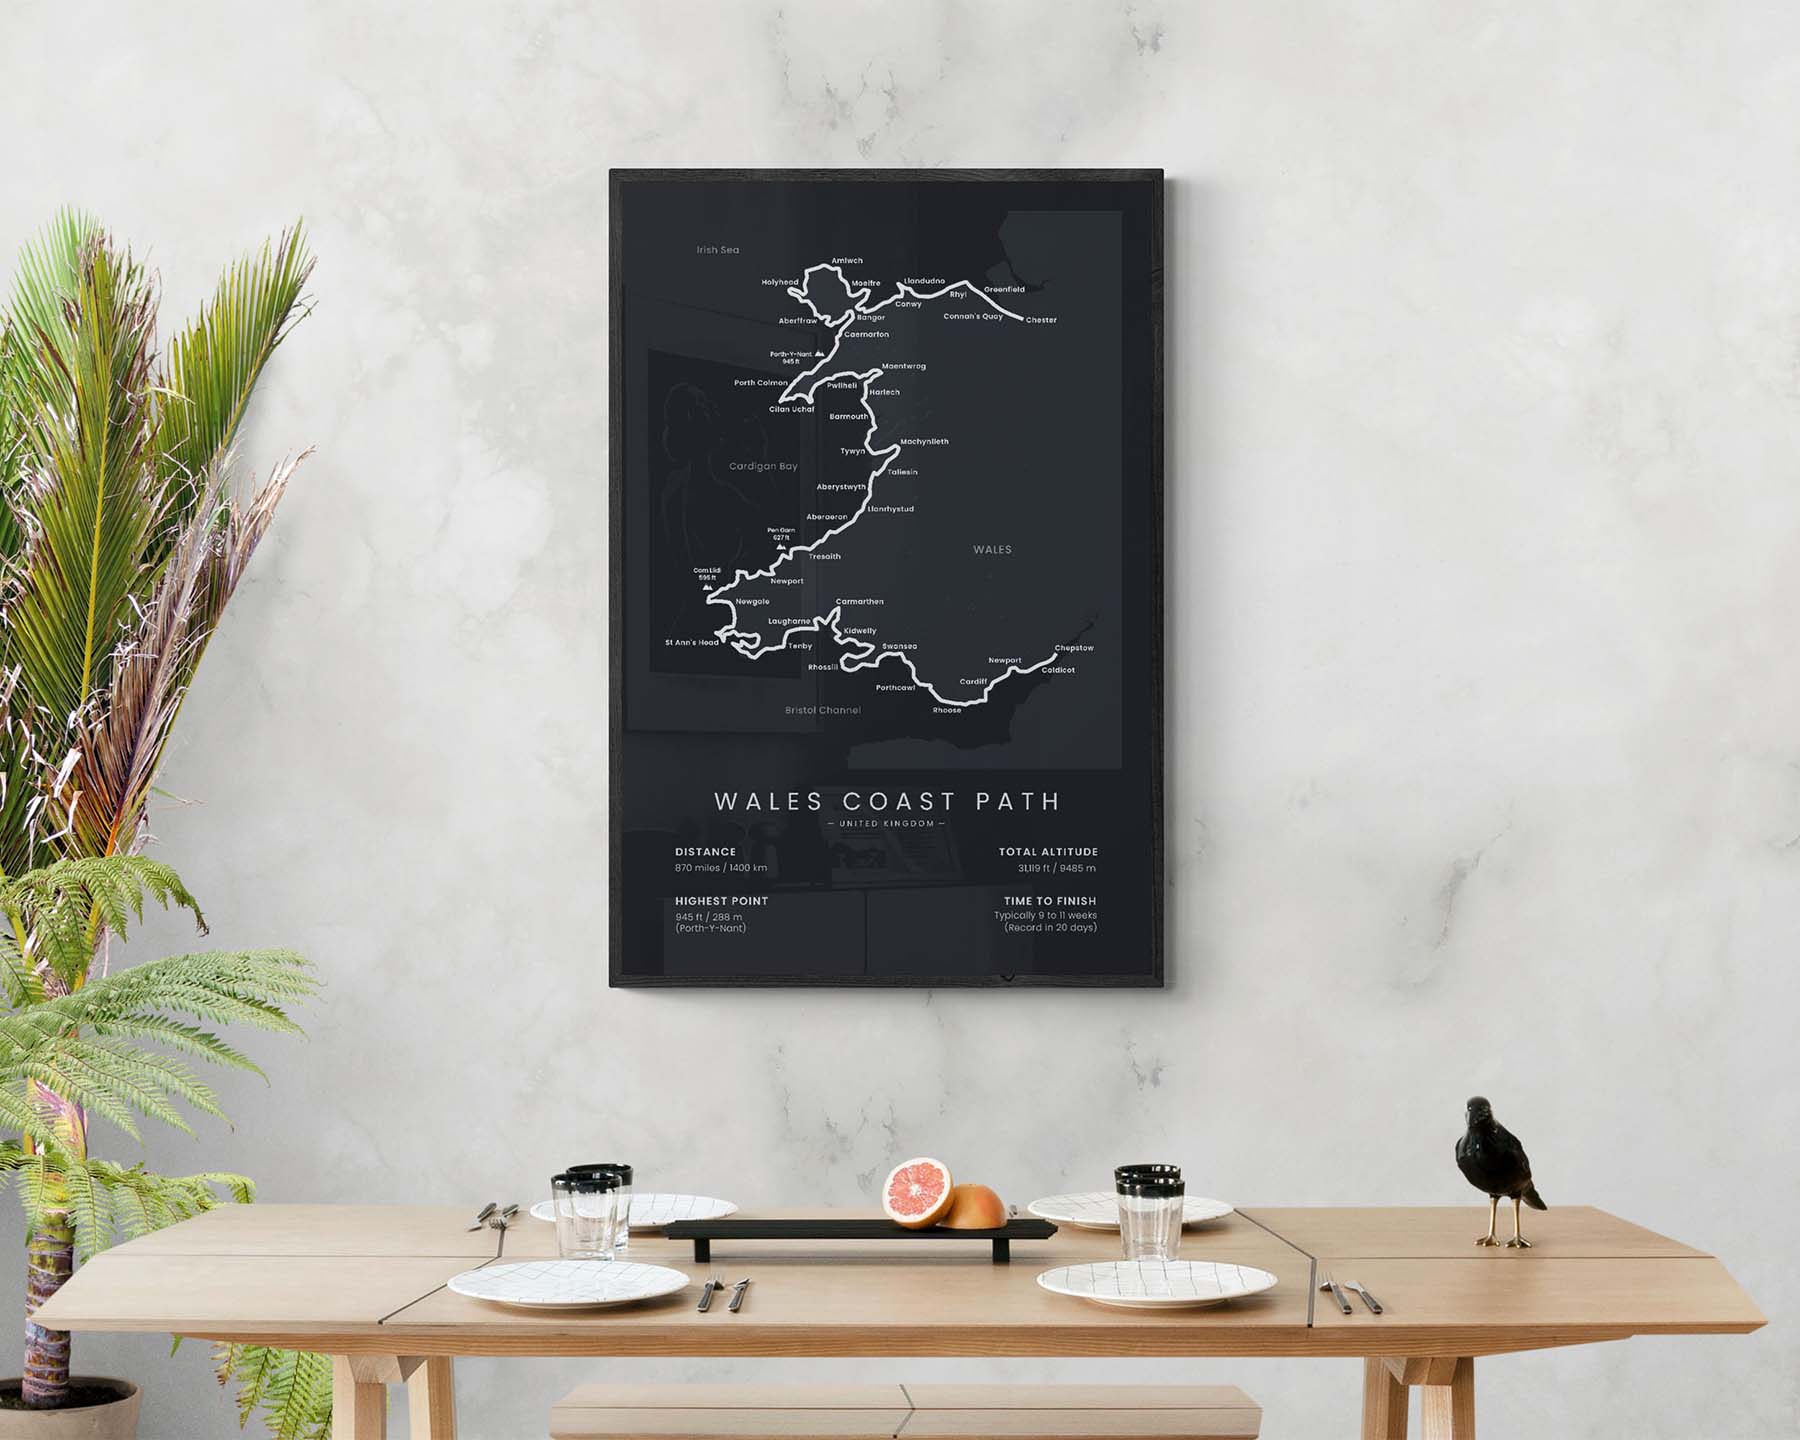 Llwybr Arfordir Cymru (Wales) hike poster in minimal room decor